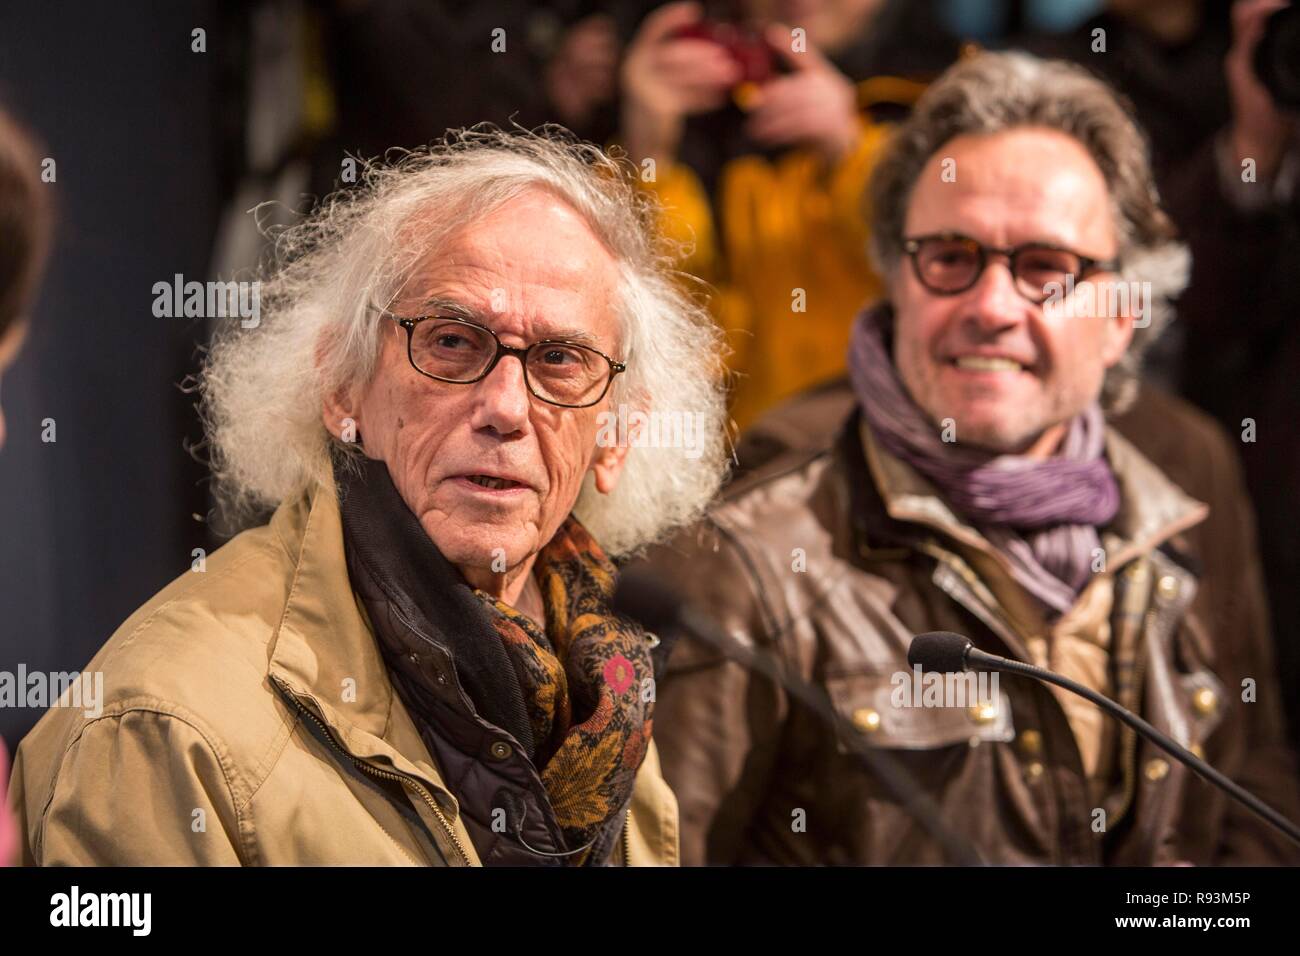 Der Künstler Christo, Links, mit Projektleiter Wolfgang Volz, Pressekonferenz zur Eröffnung der Ausstellung der Stockfoto